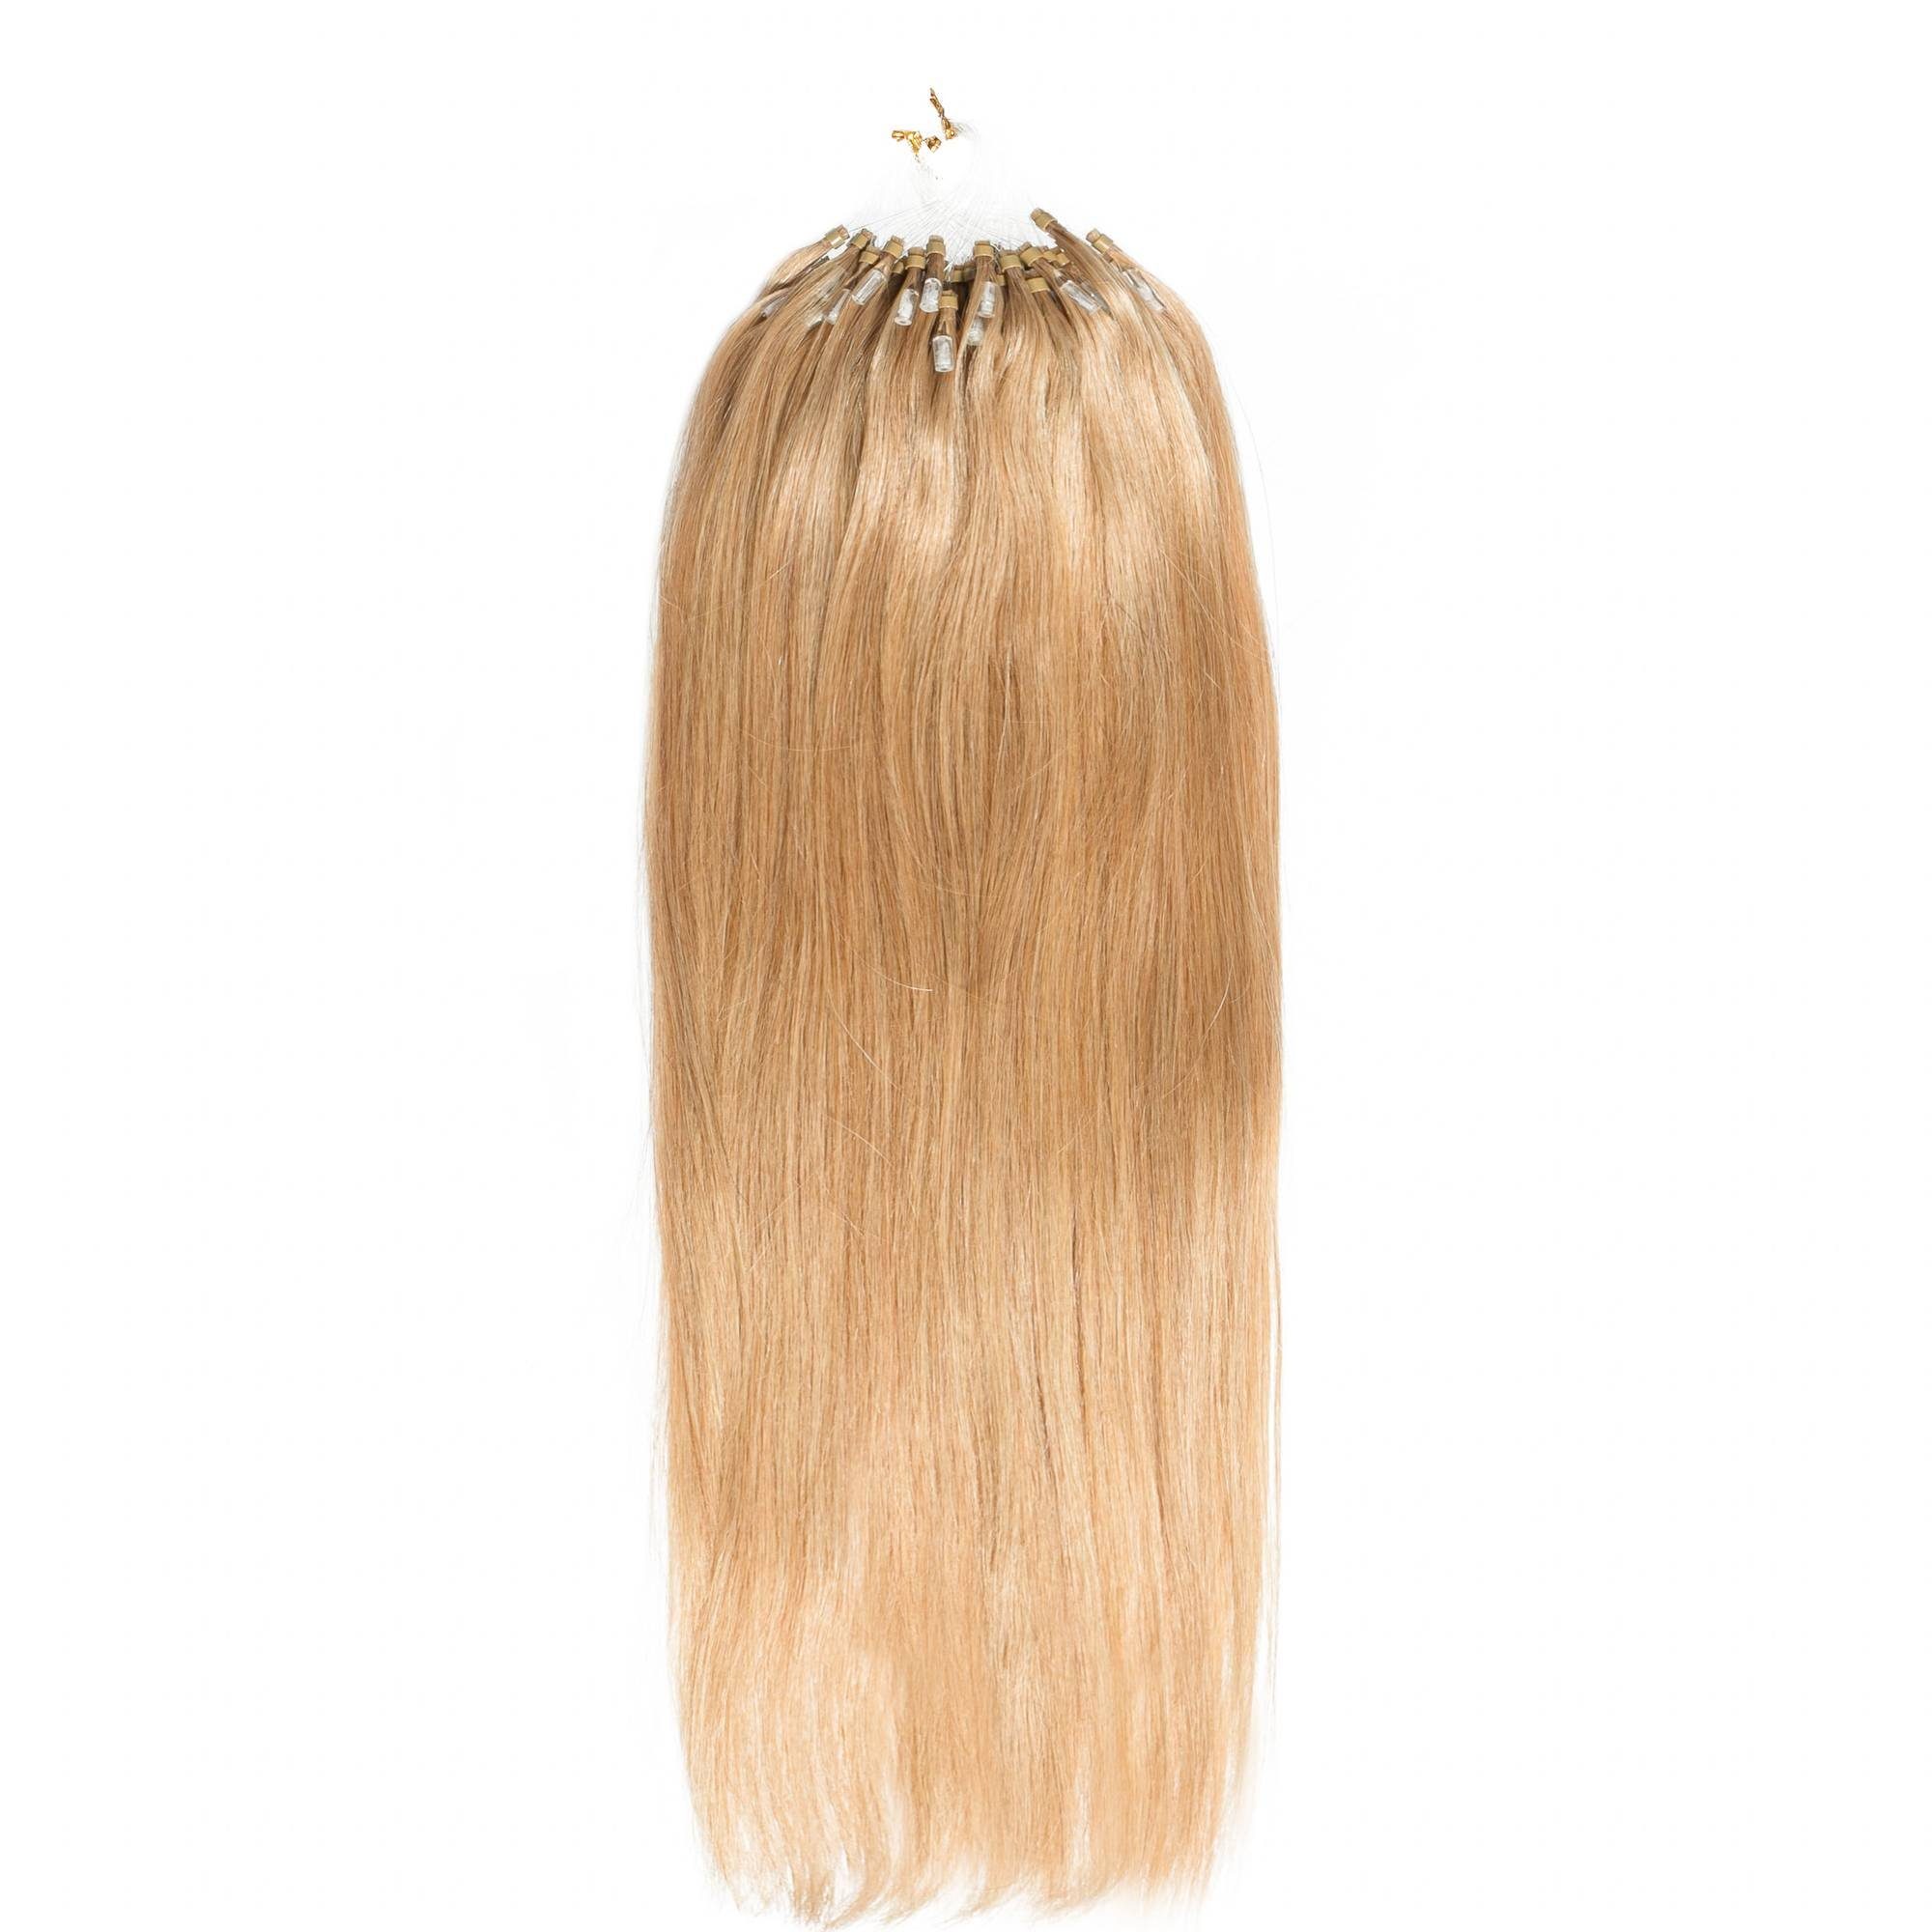 Microring Extensions Premium Gold-Asch hair2heart Lichtblond 40cm Echthaar-Extension #9/31